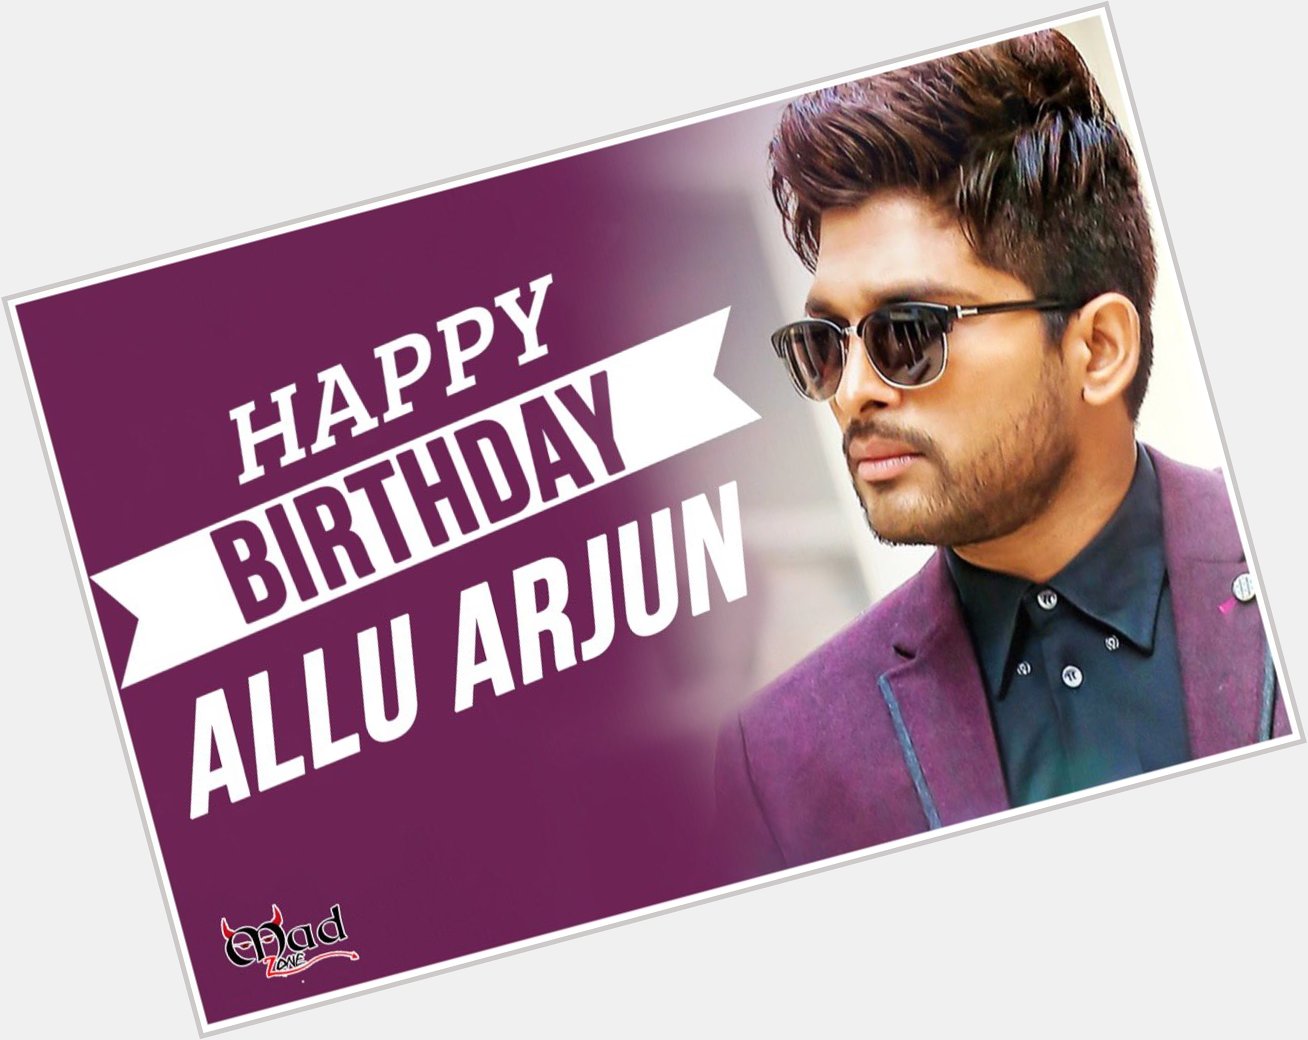 Happy birthday Allu Arjun
We all love you  